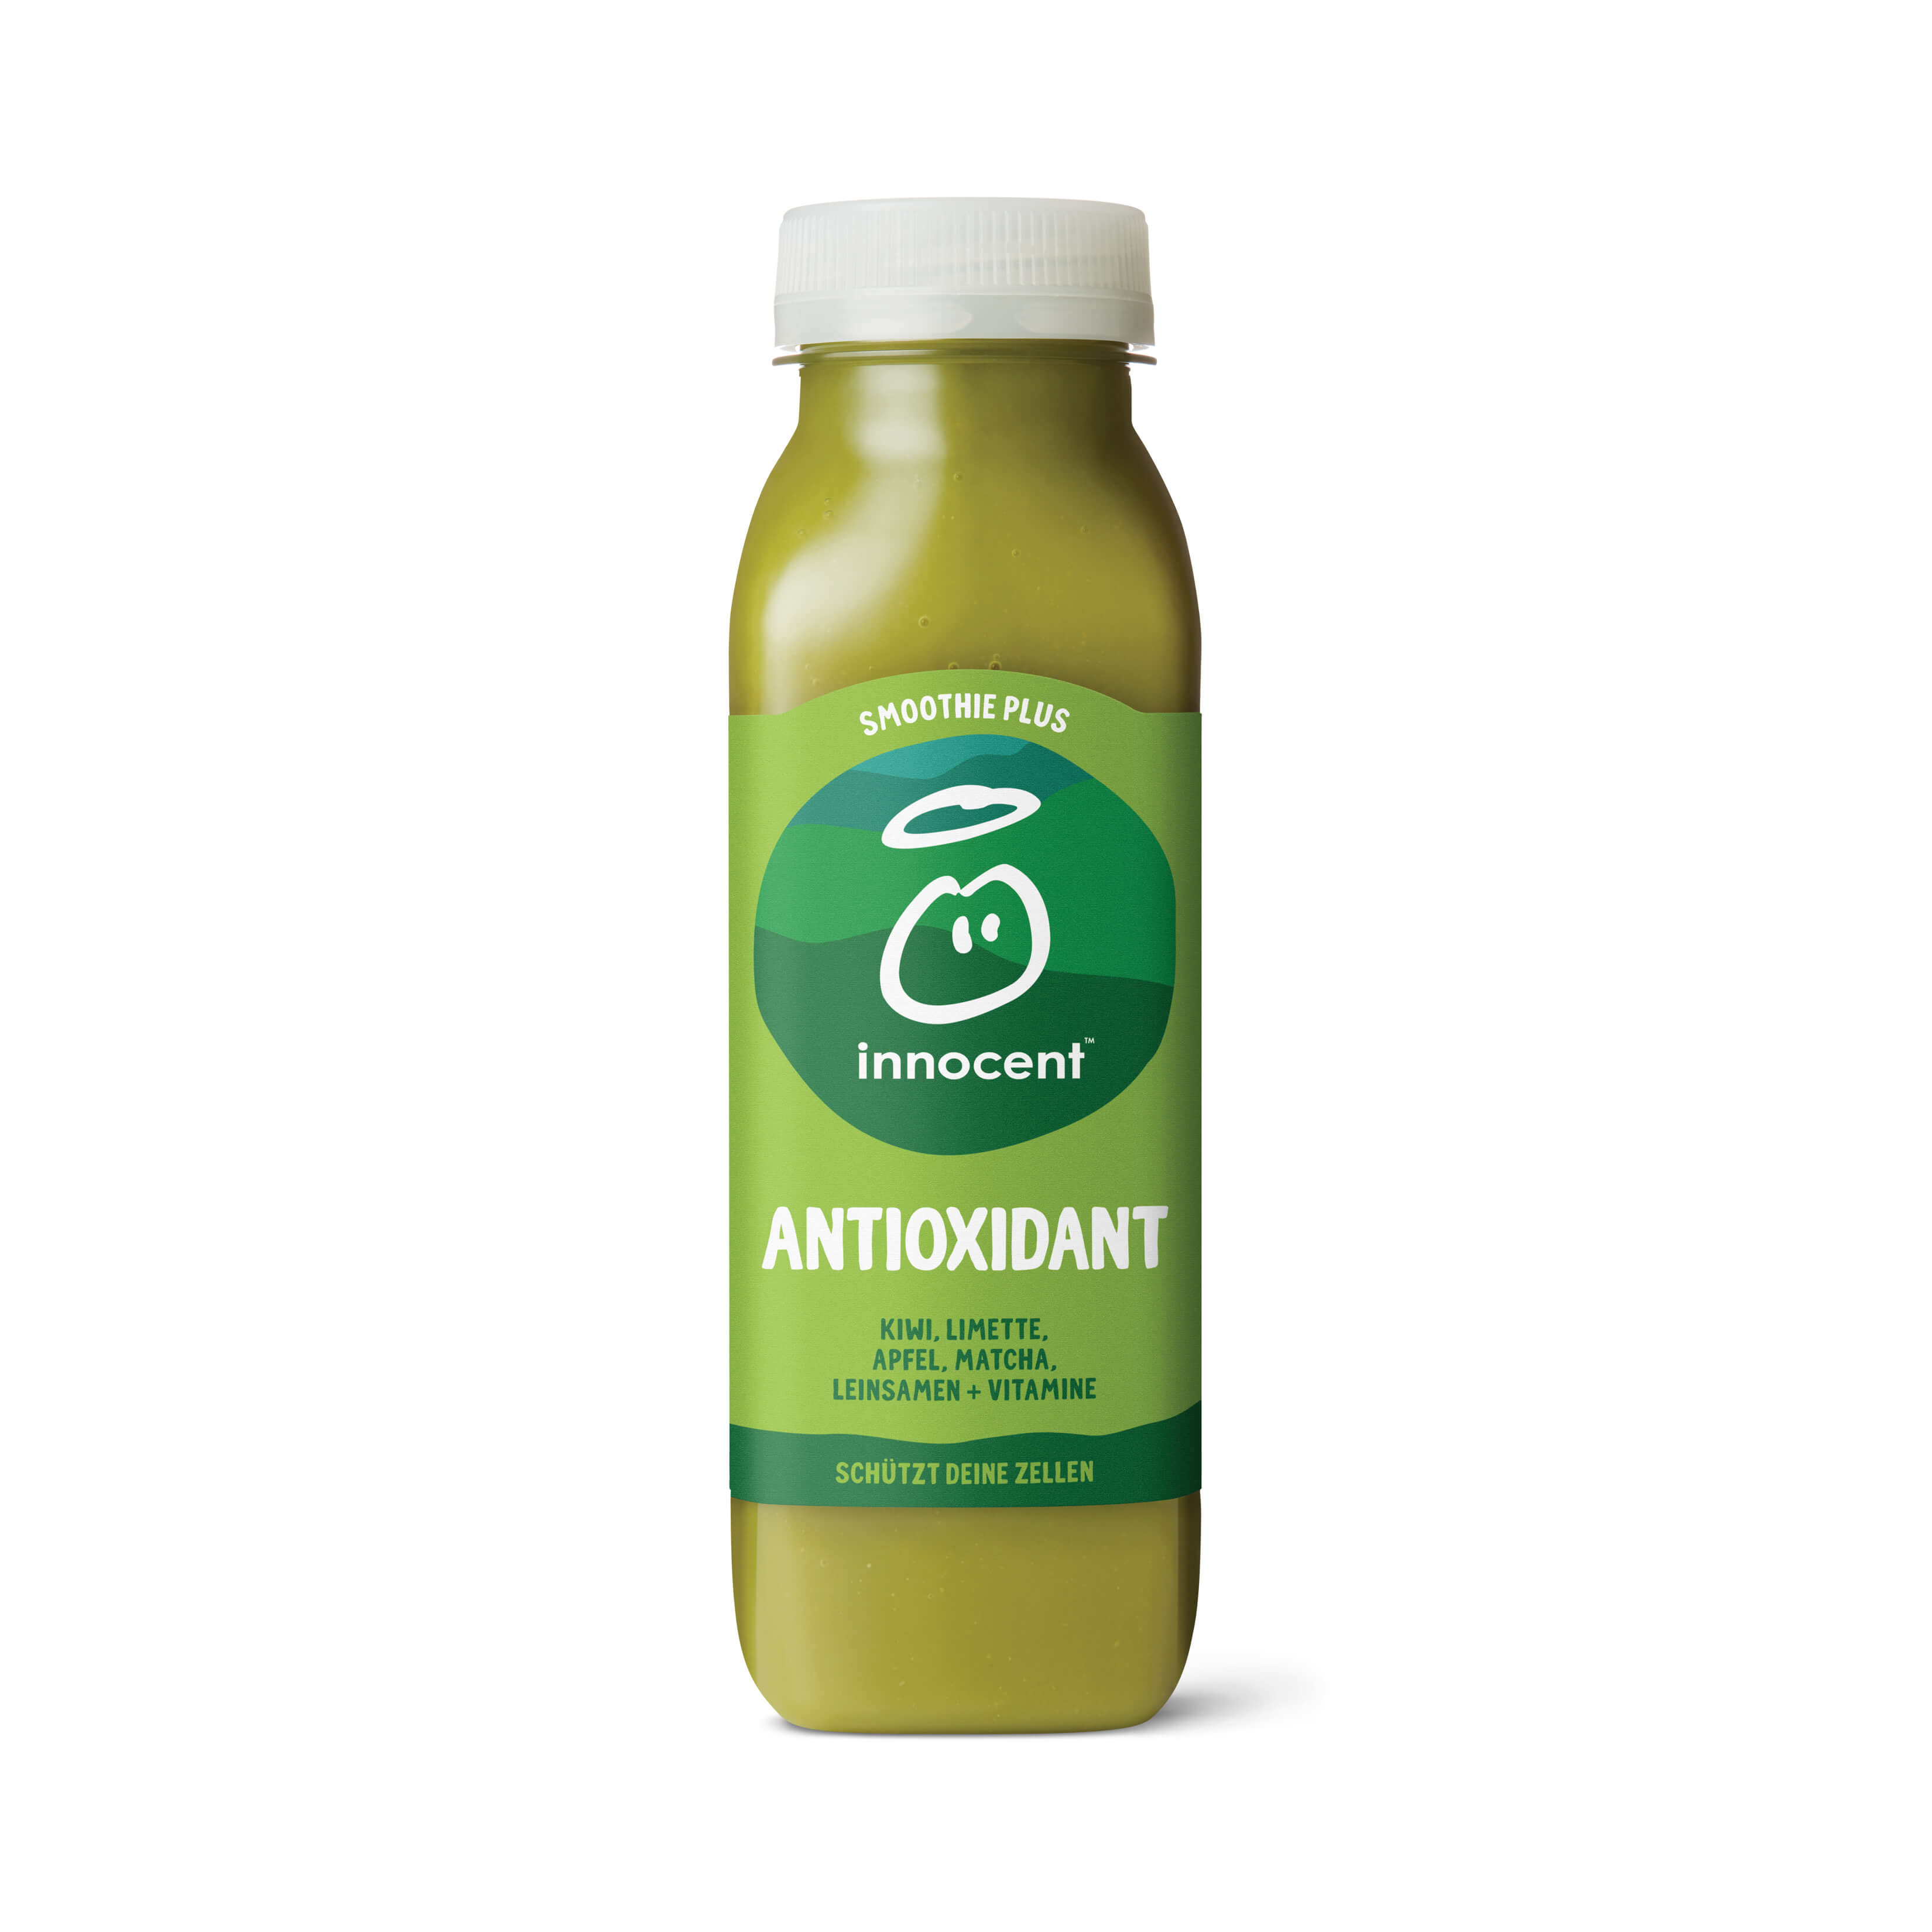 Antioxidant Smoothie Plus 300ml